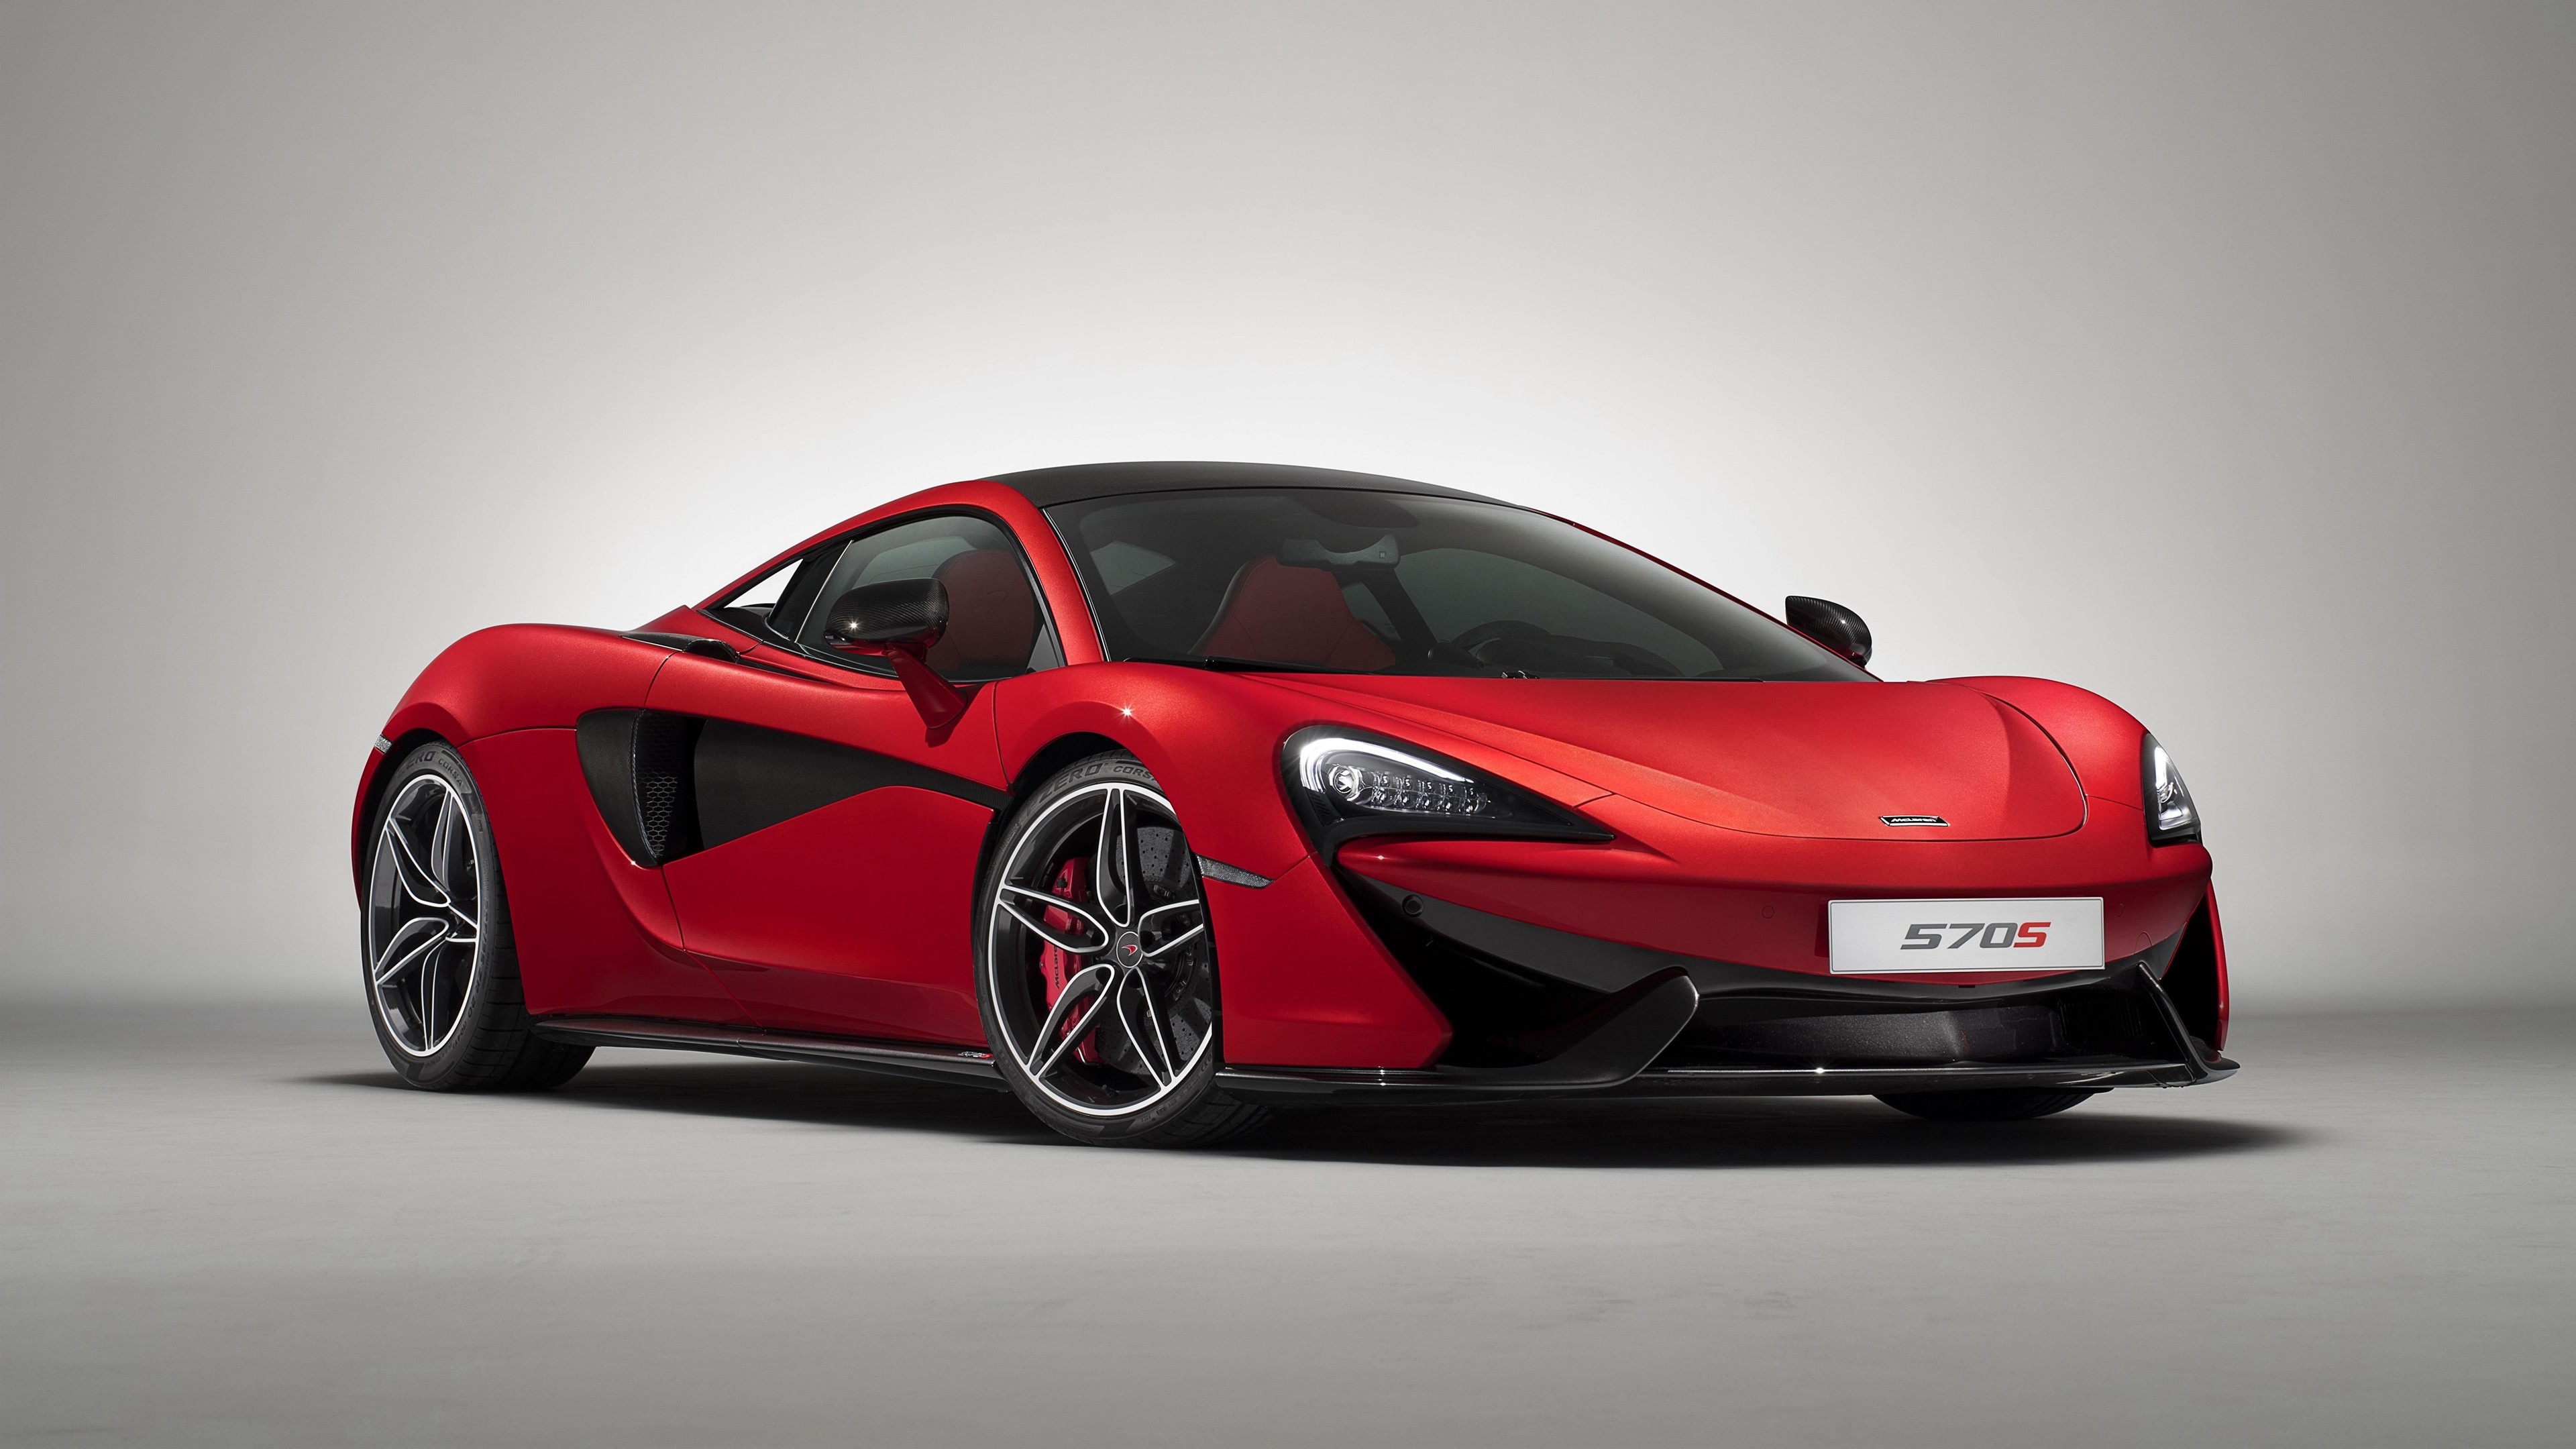 McLaren 570S (Auto), Red car design edition, Stunning visuals, Luxury sports car, 3840x2160 4K Desktop